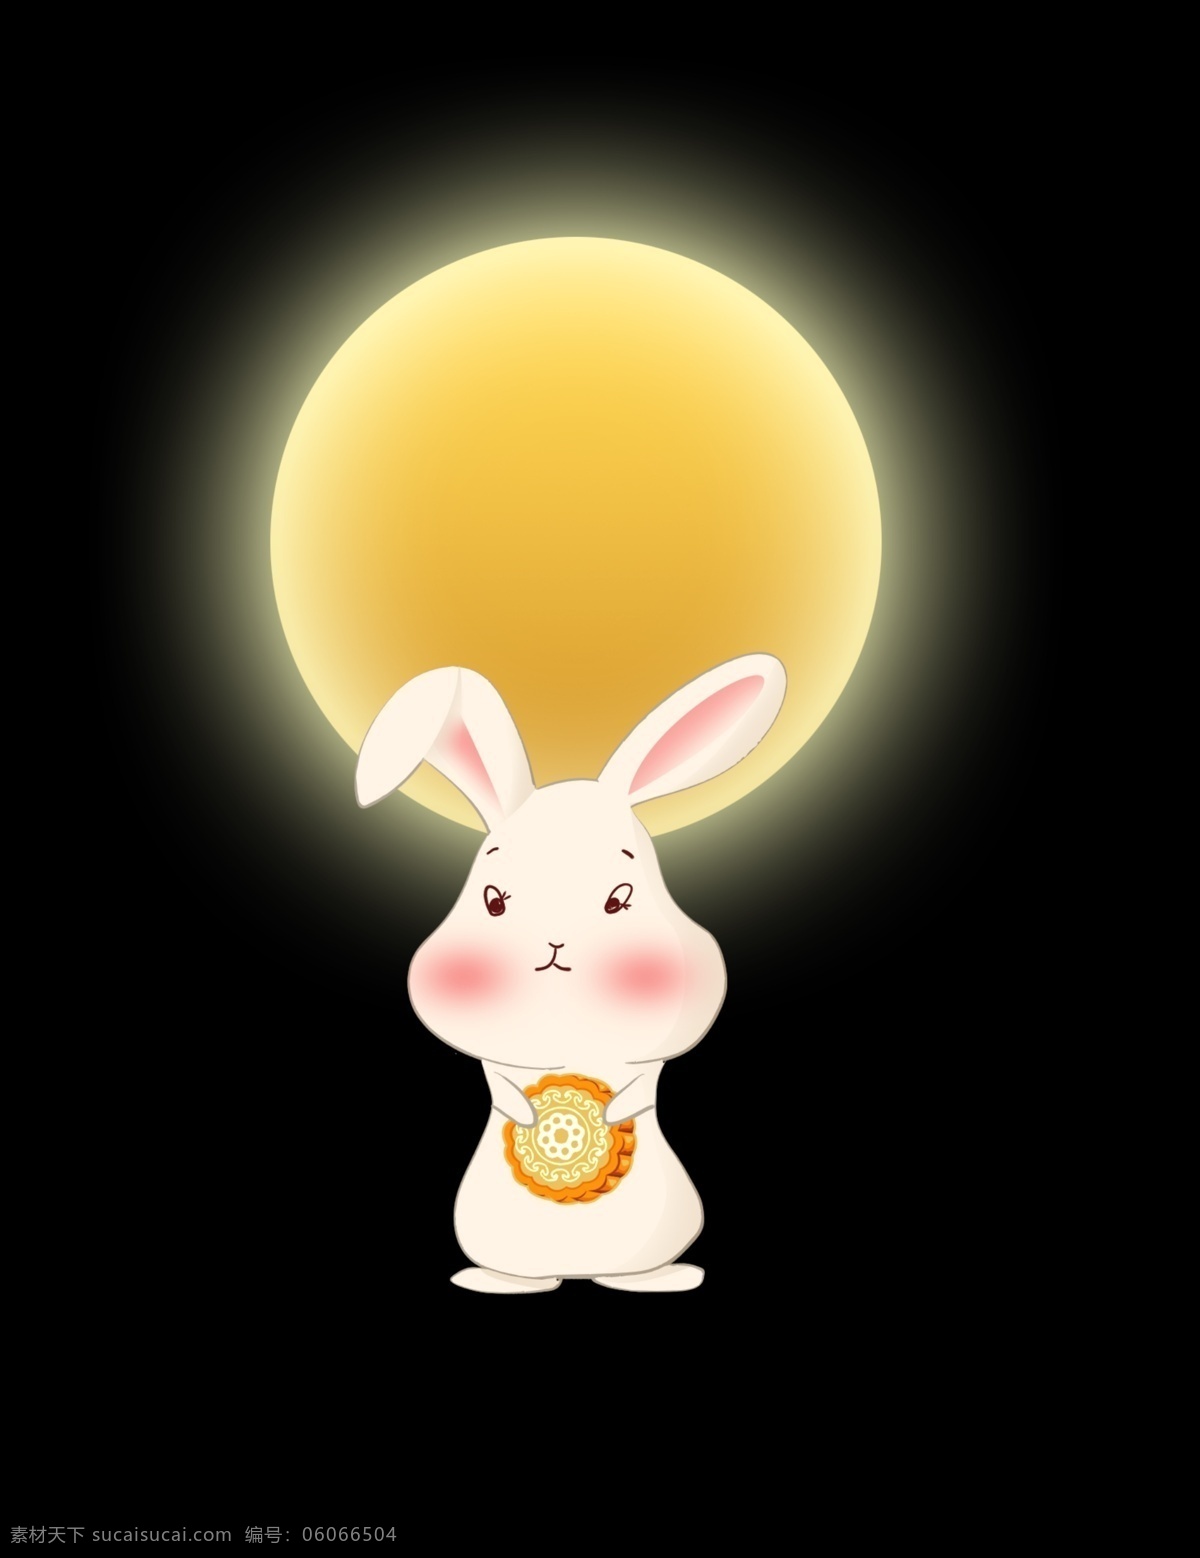 中秋 抱 月饼 兔子 中秋兔子 抱月饼的兔子 卡通兔子 月亮下的兔子 兔子姑娘 可爱小萌兔